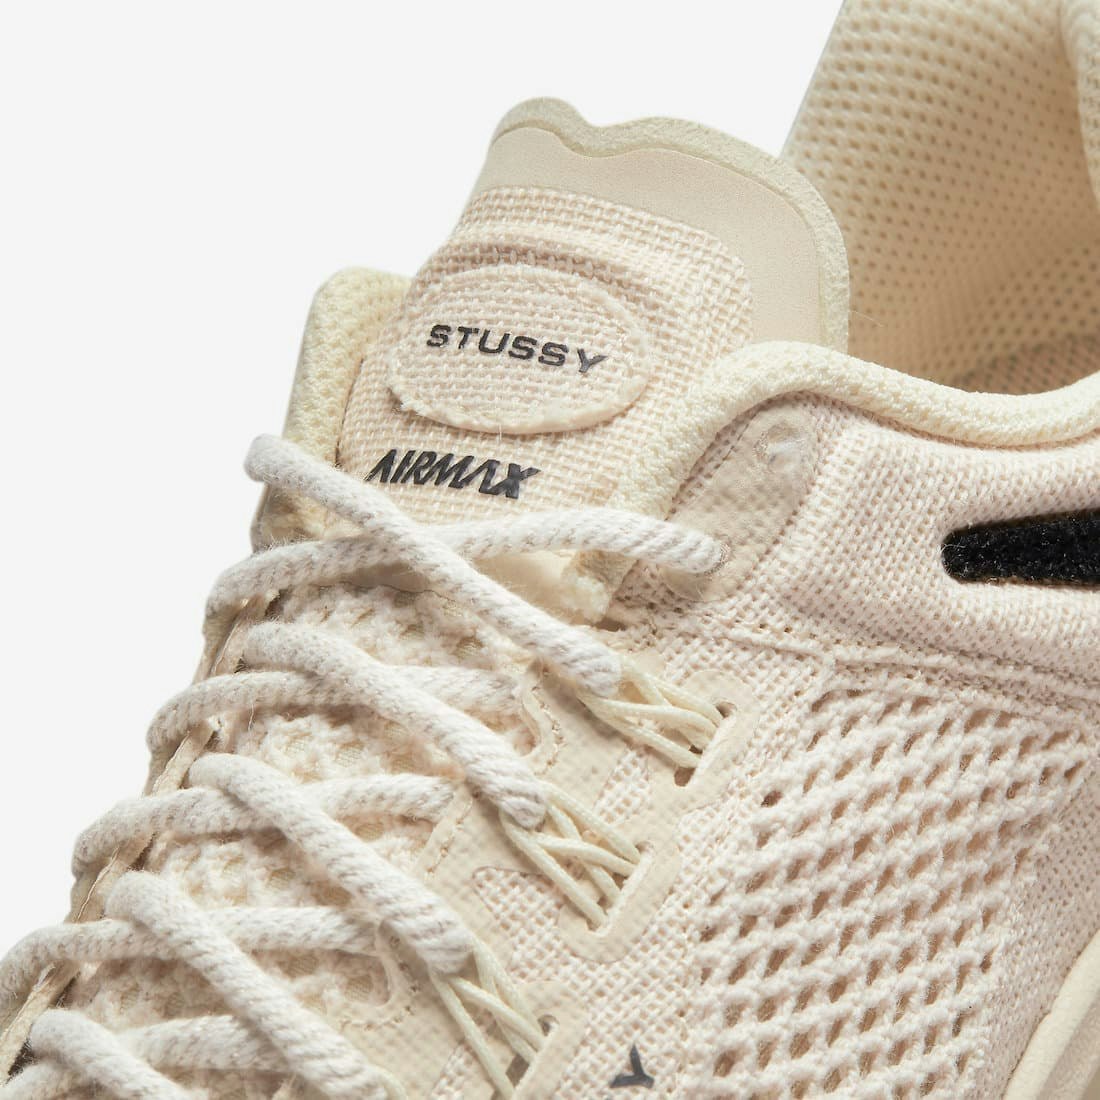 Stüssy x Nike Air Max 2015 “Fossil”